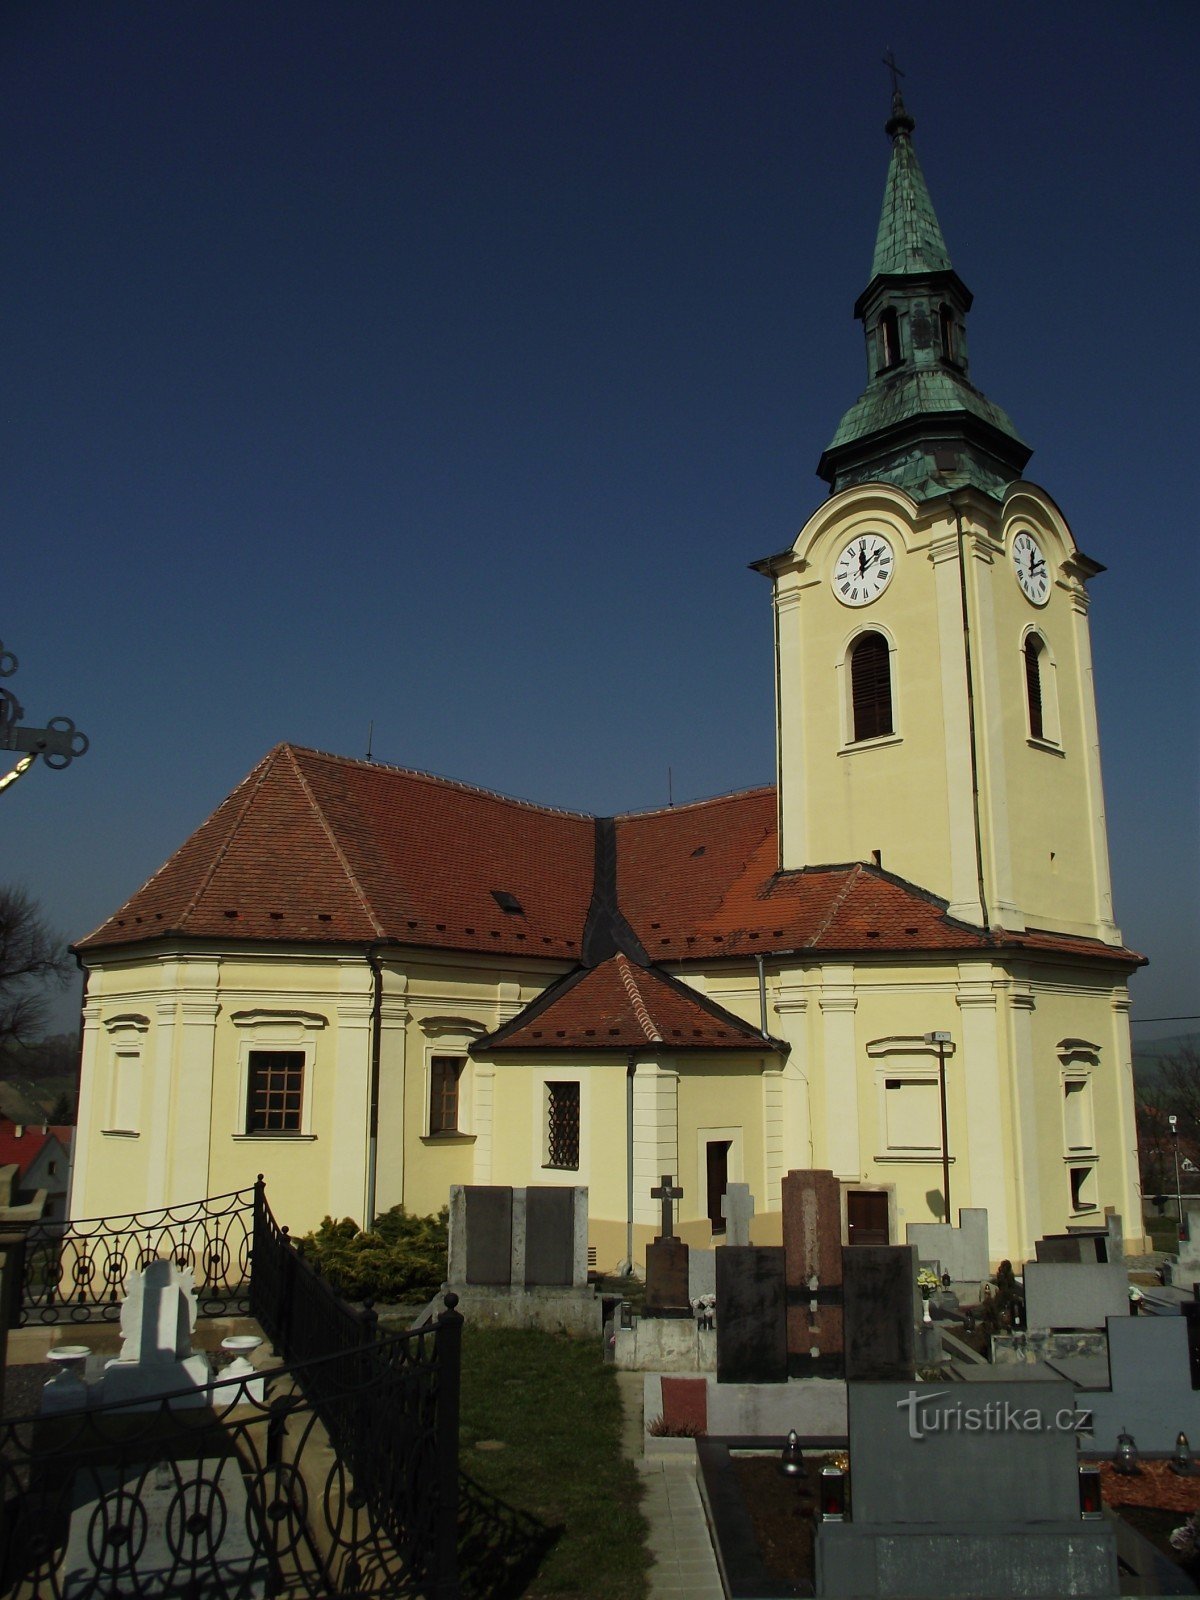 Біловіце - церква св. Івана Хрестителя